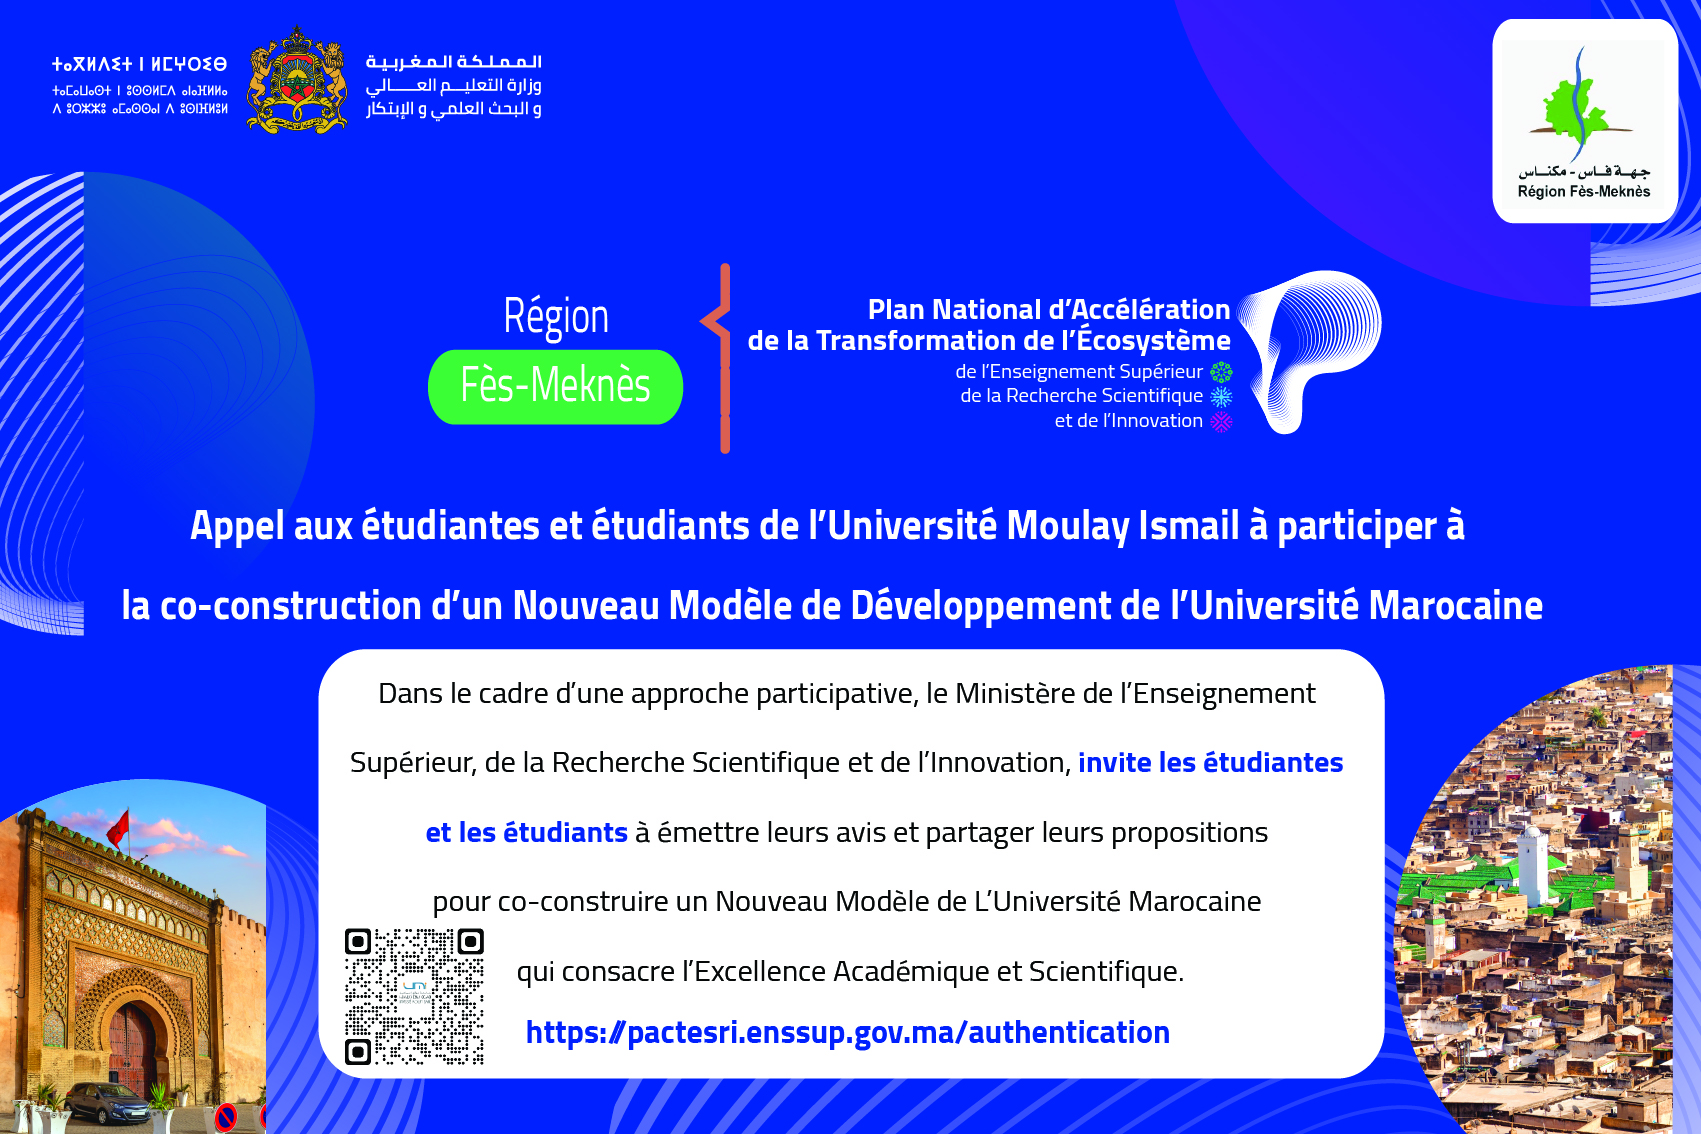 Appel aux étudiants de l’Université Moulay Ismail à participer à la co-construction d’un nouveau Modèle de Développement de  l’Université Marocaine